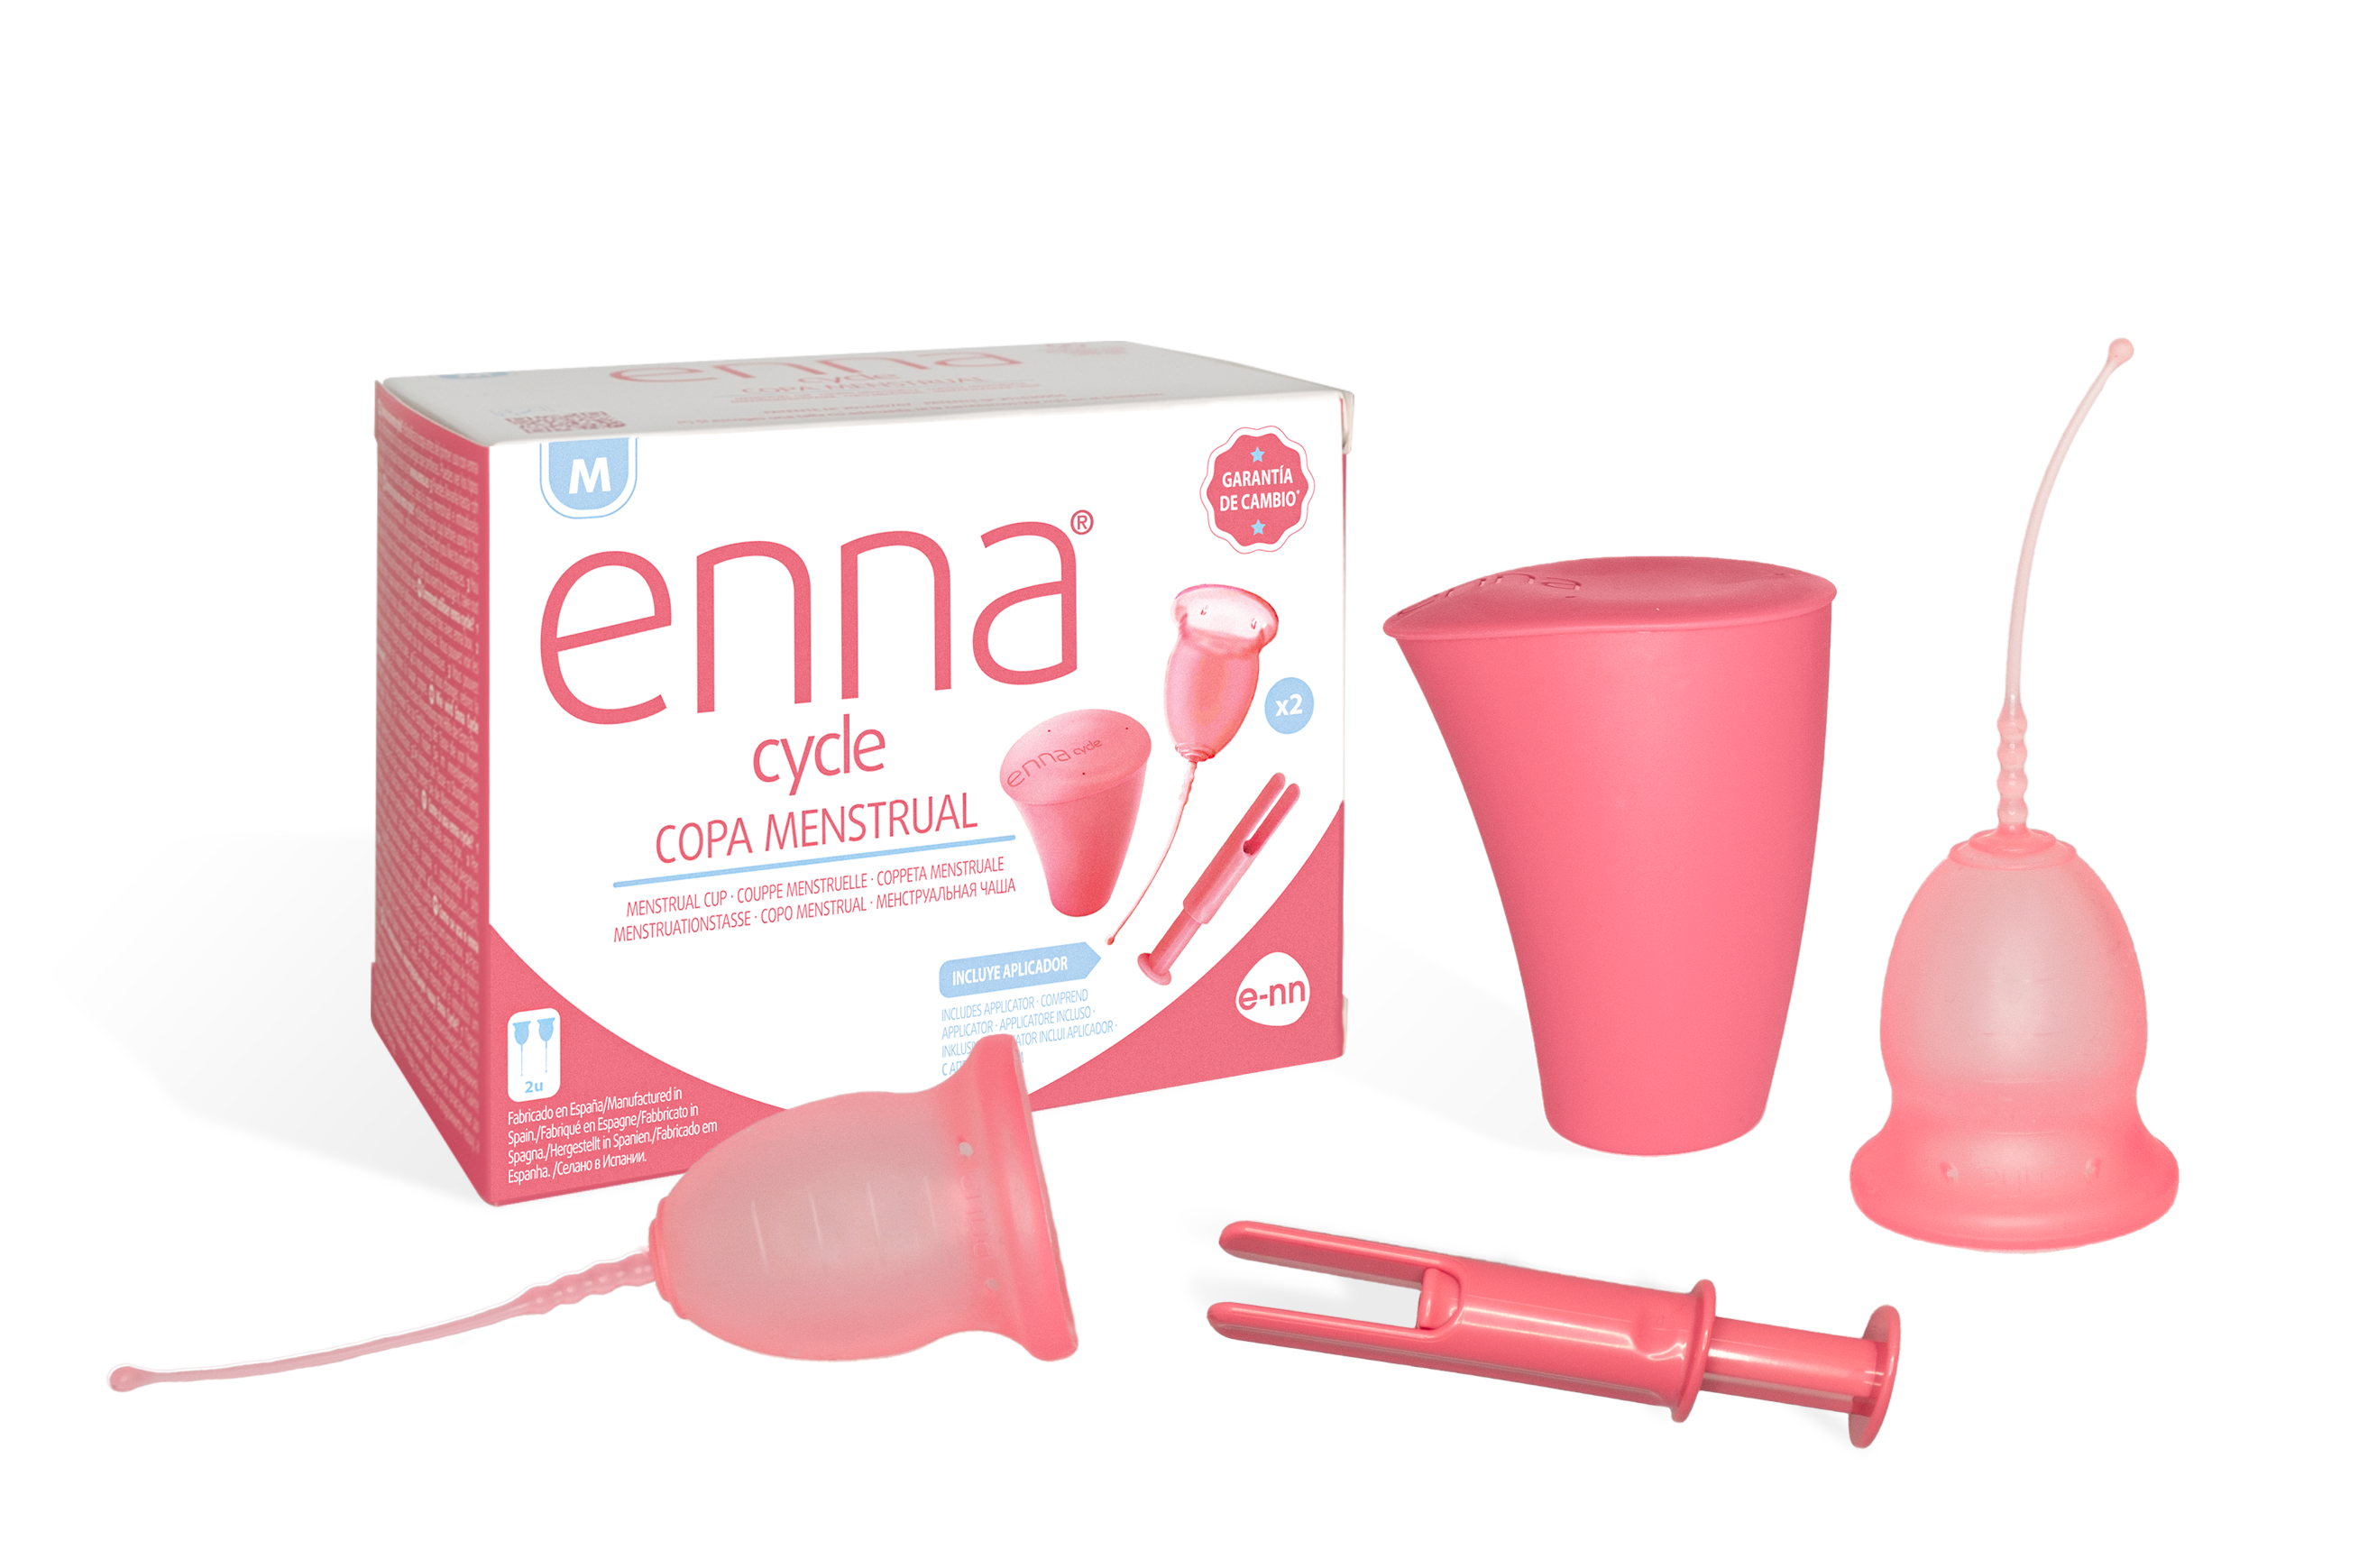 Contratista Comiendo Evaluable Enna cycle - la copa menstrual de la farmacia